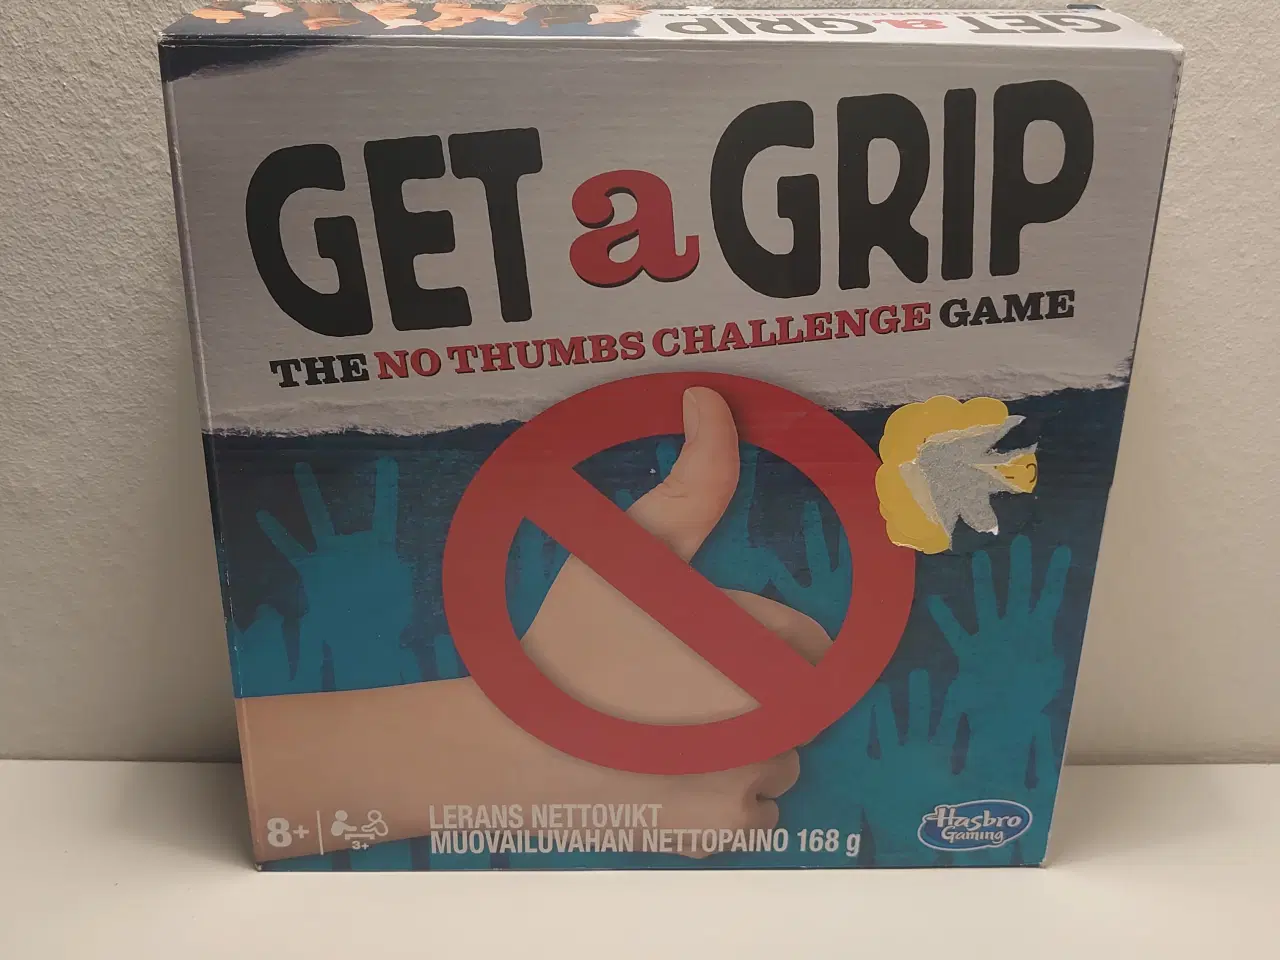 Billede 1 - "Get a Grip"Sjovt og populært udfordringsspil.